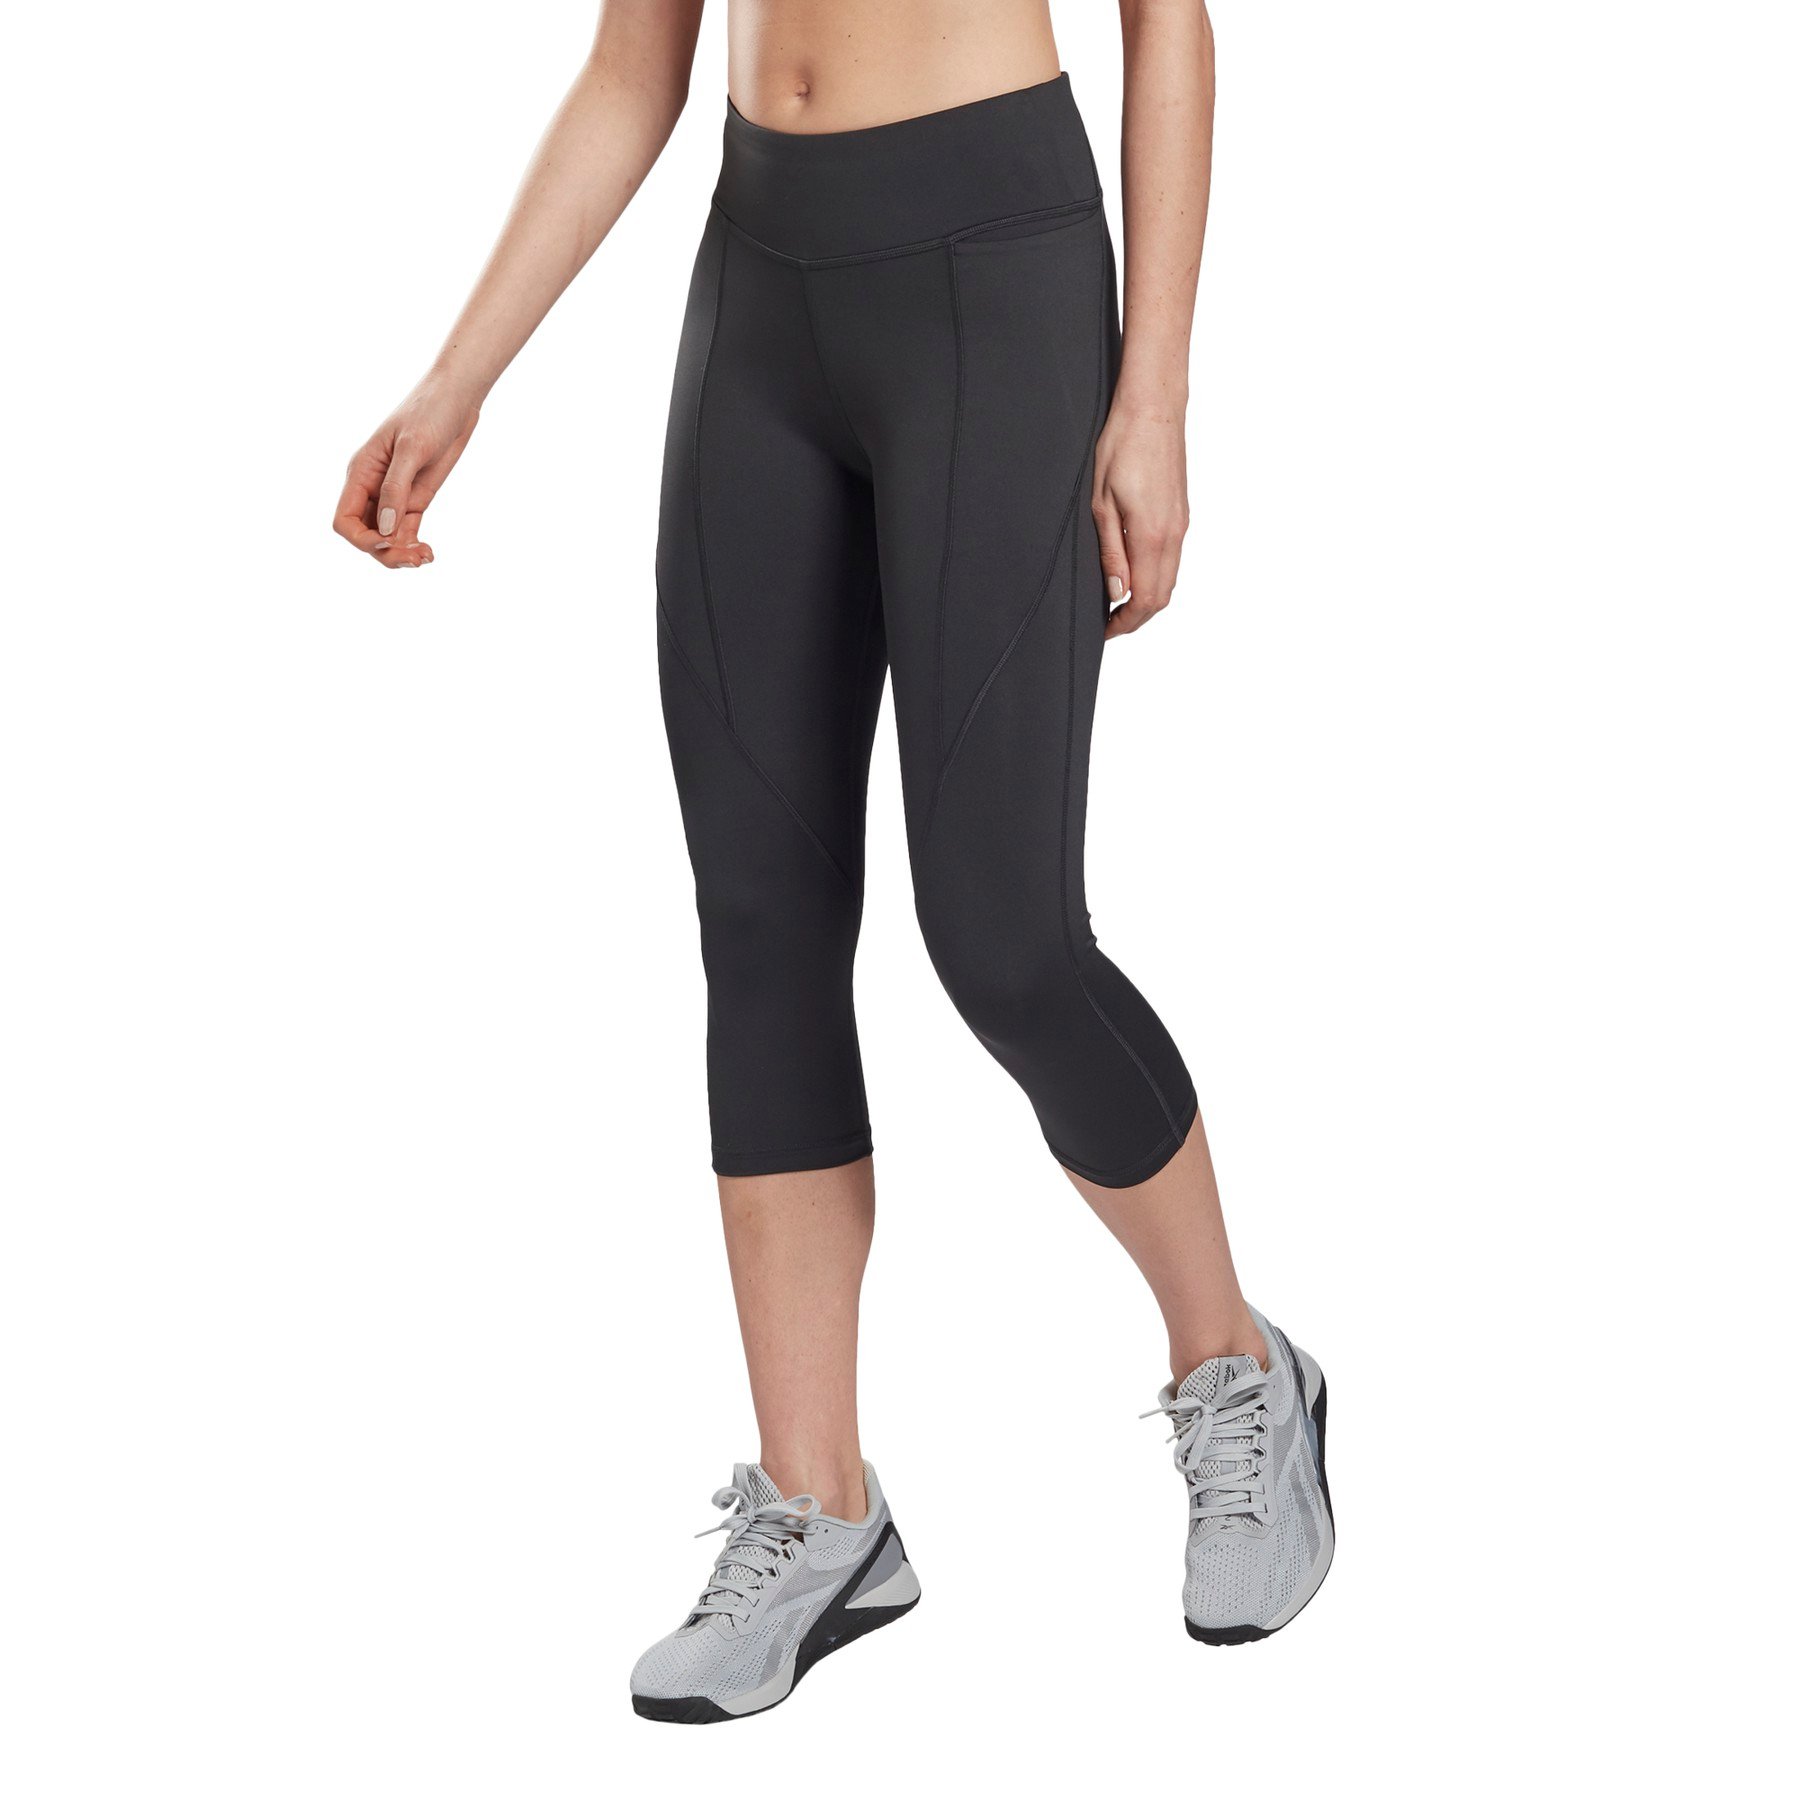 Black Reebok Womens Workout Ready Pant Program Capri Tights - Get